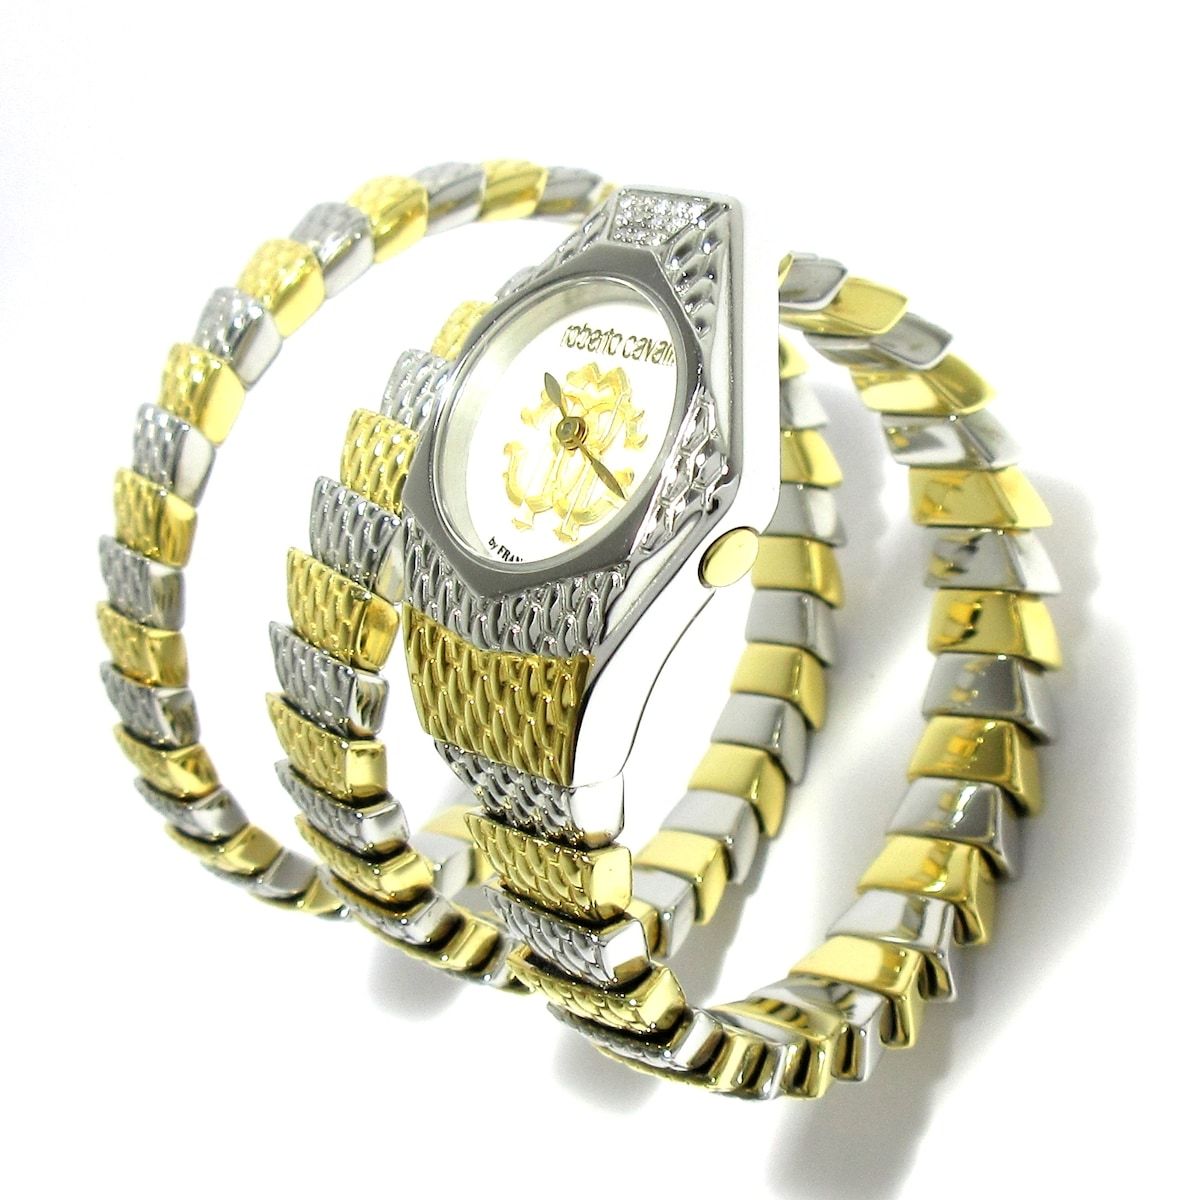 RobertoCavalli(ロベルトカヴァリ) 腕時計 - RV2L021M0061 レディース 3連ブレス/シェル文字盤 ホワイトシェル×ゴールド